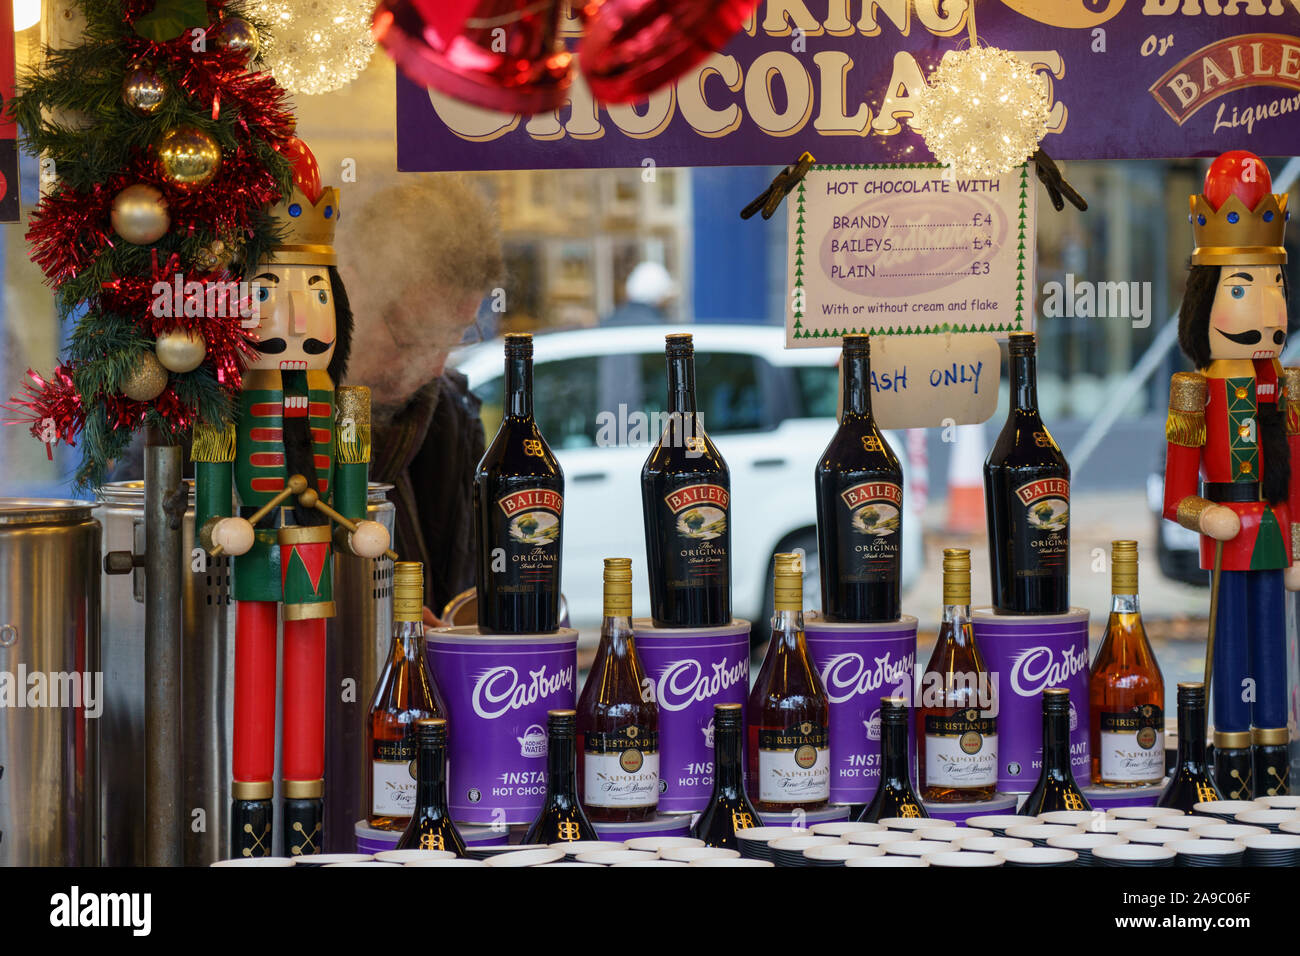 Quatre bouteilles de Baileys Irish Cream se trouvaient sur le stand de boîtes de chocolat chaud de Cadbury au marché de Noël, Harrogate, North Yorkshire, Royaume-Uni. Banque D'Images